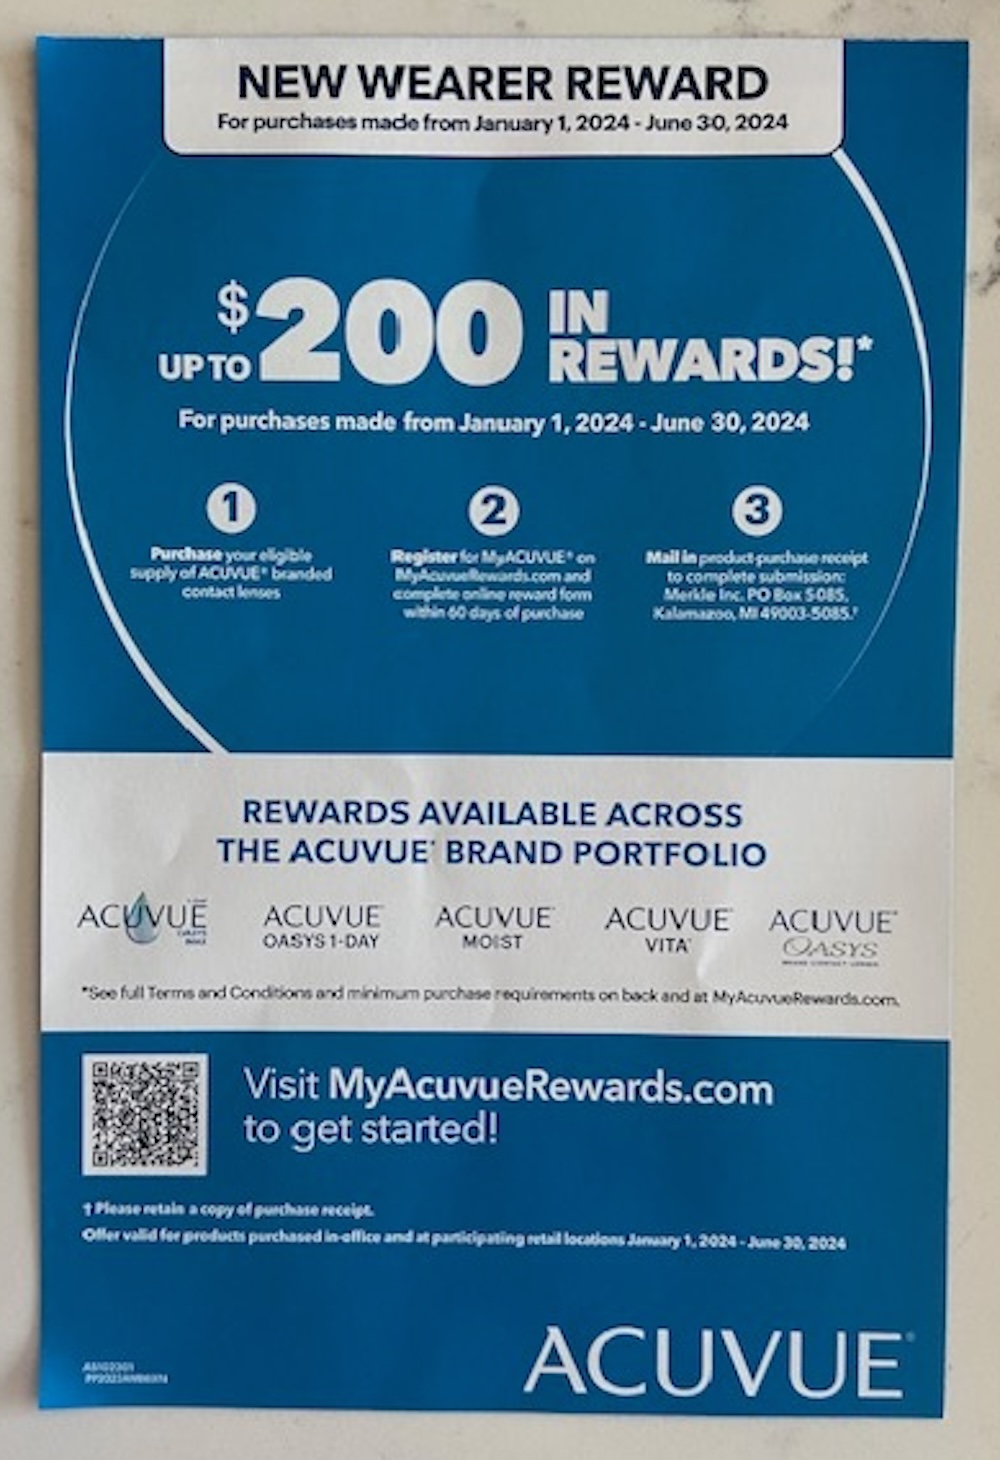 Acuvue New Wearer Reward